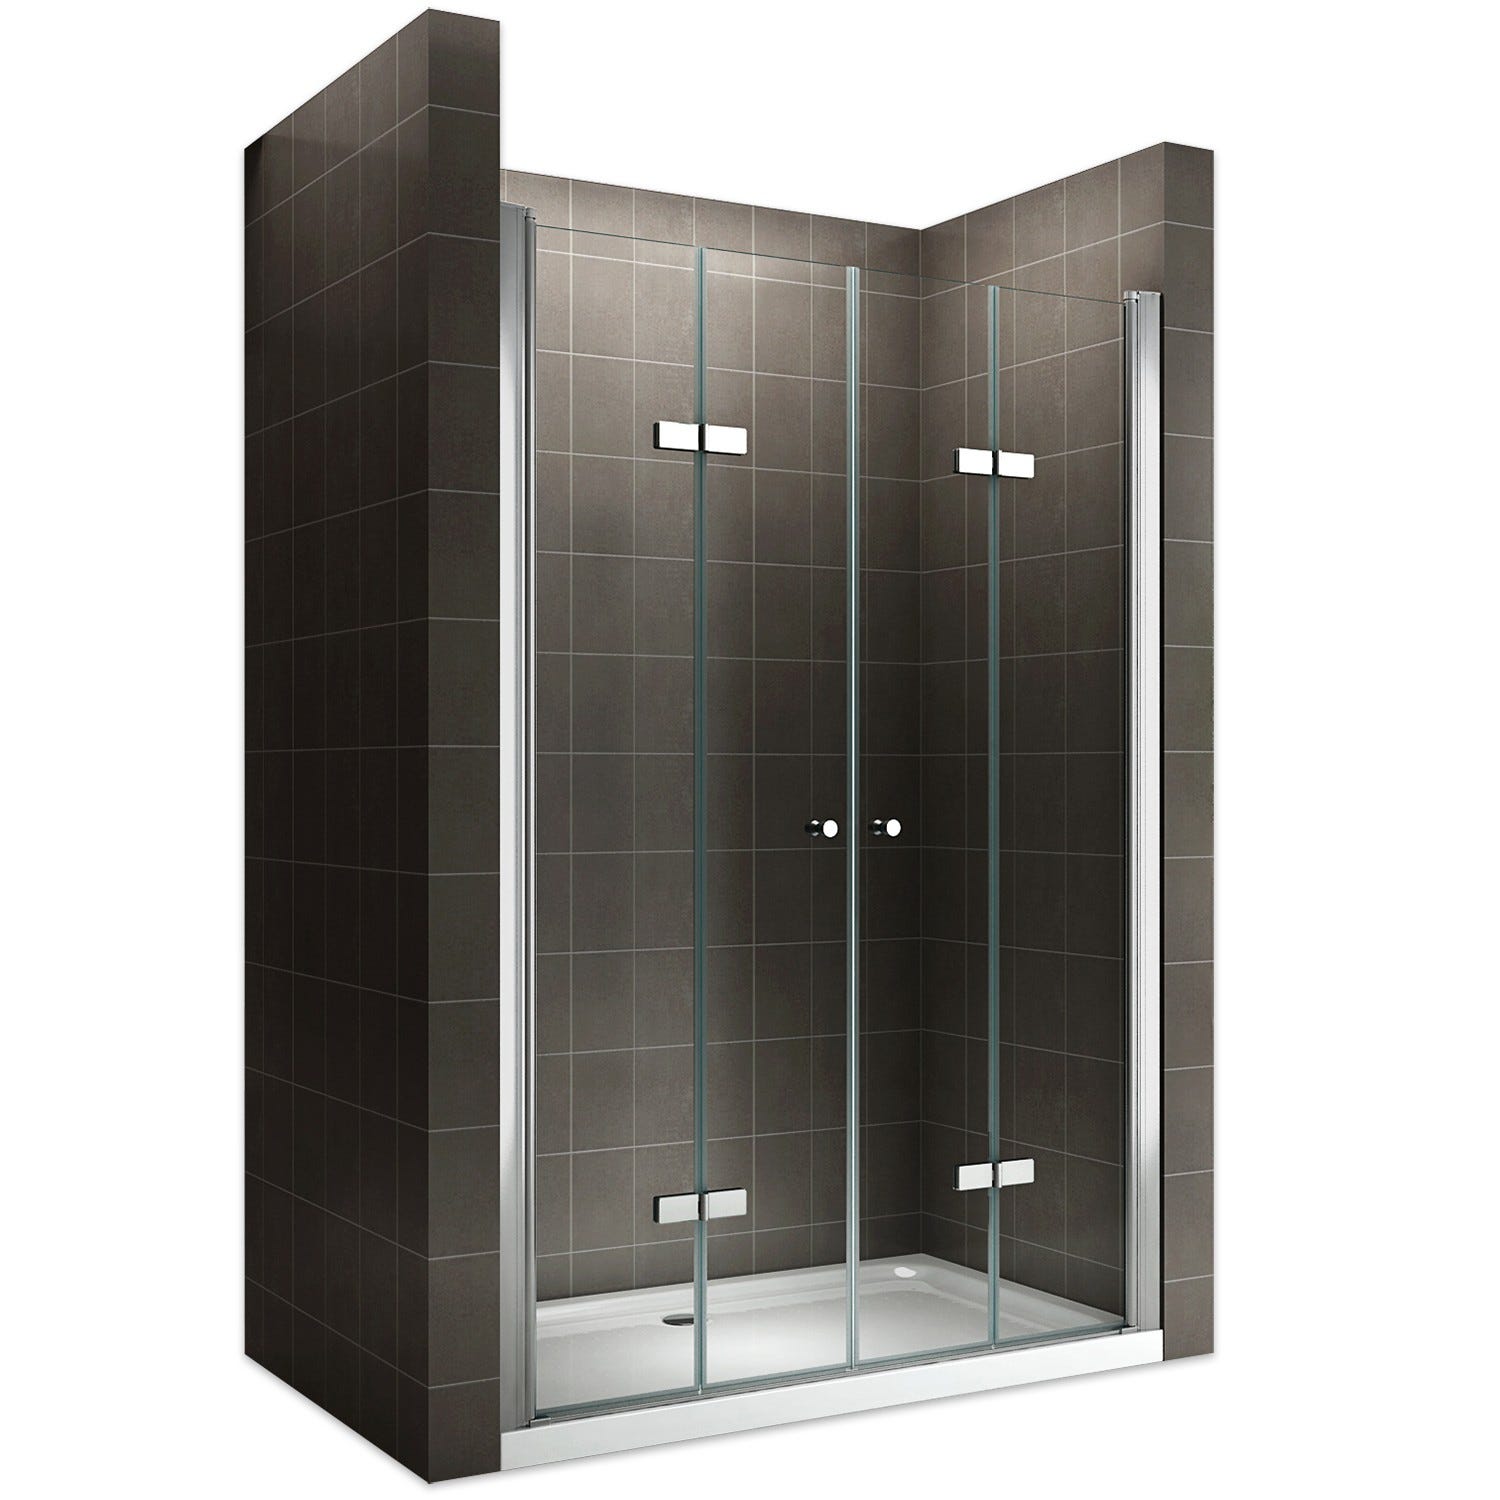 EMMY Porte de douche pliante pivotante H 195 cm largeur réglable 148 à 152 cm verre transparent 0